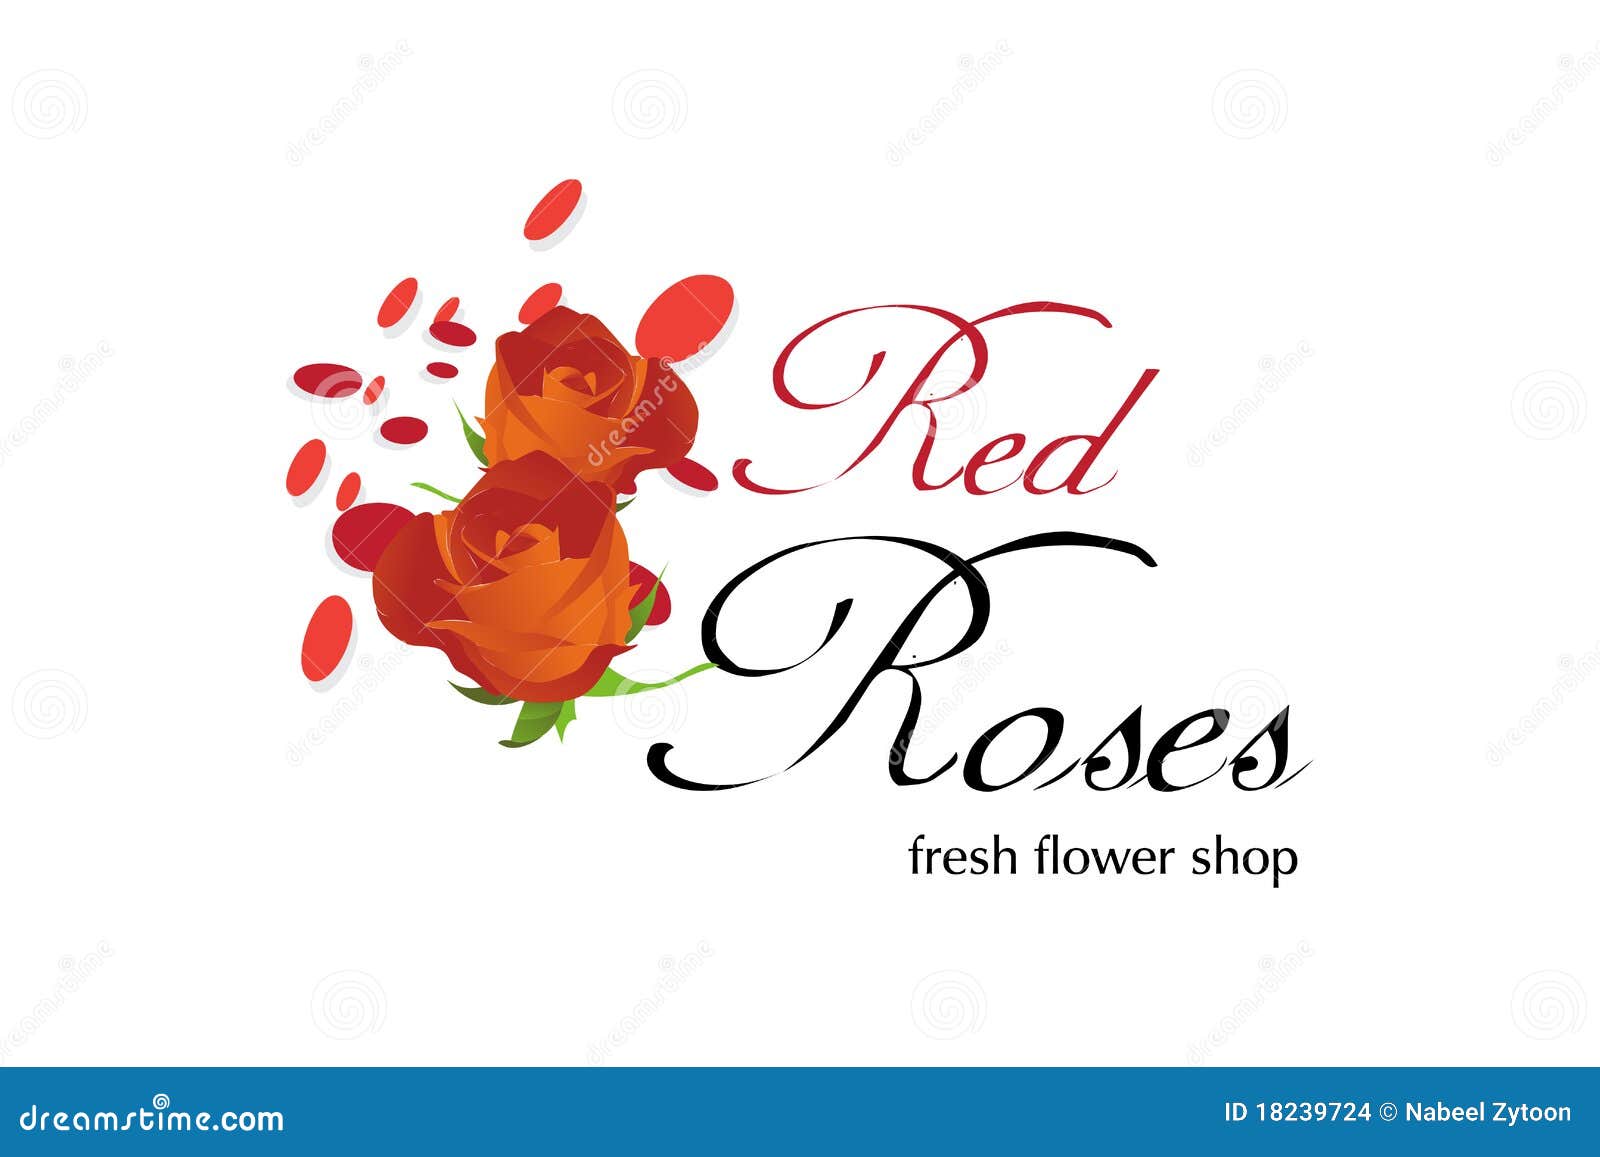 Florist shop business plan